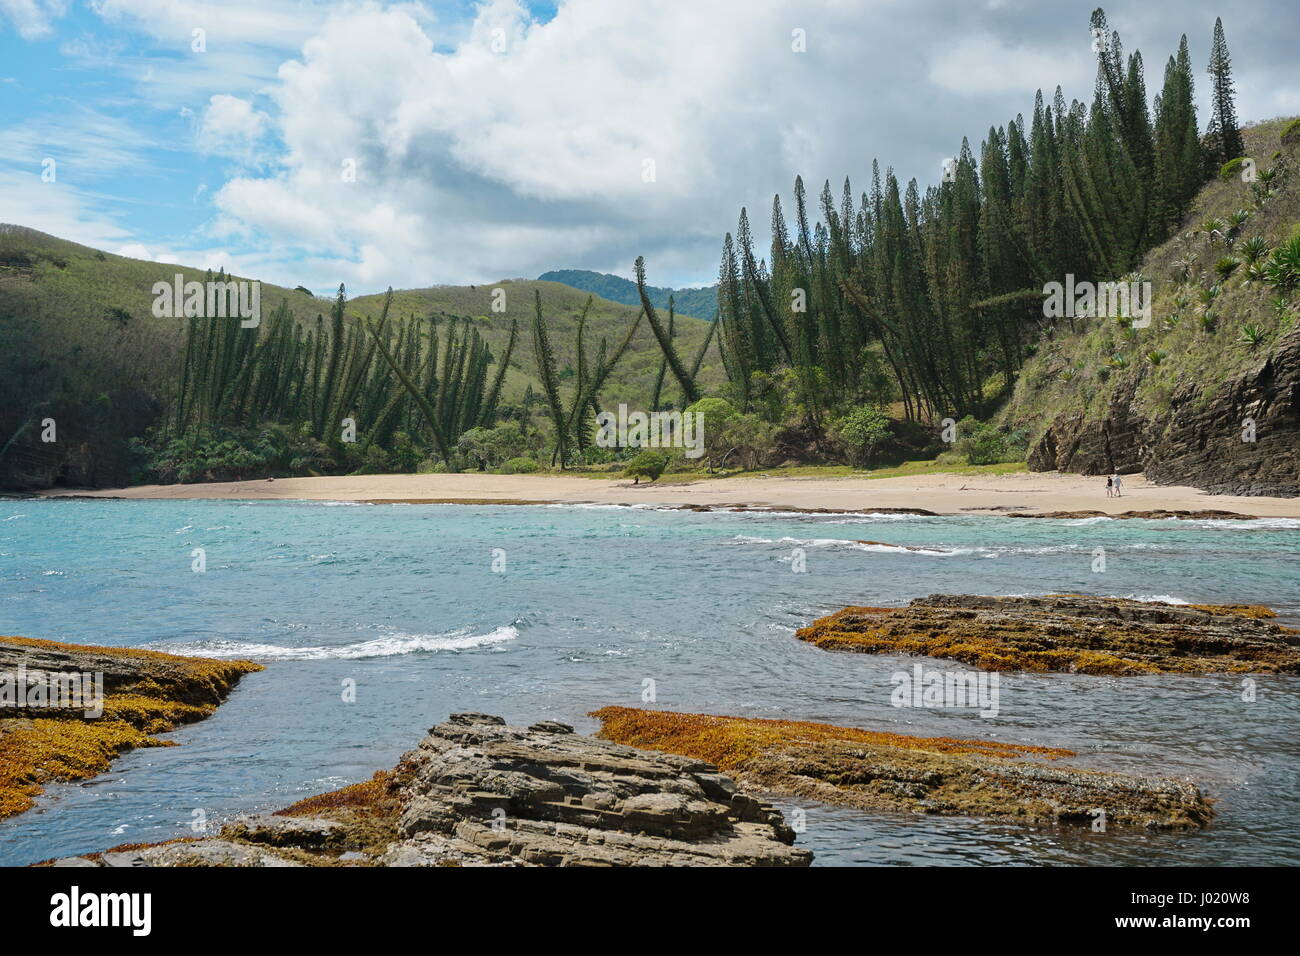 Nuova Caledonia costa, spiaggia con Araucaria pini nella Turtle Bay, Bourail, Grande Terre, l'isola del Sud Pacifico Foto Stock